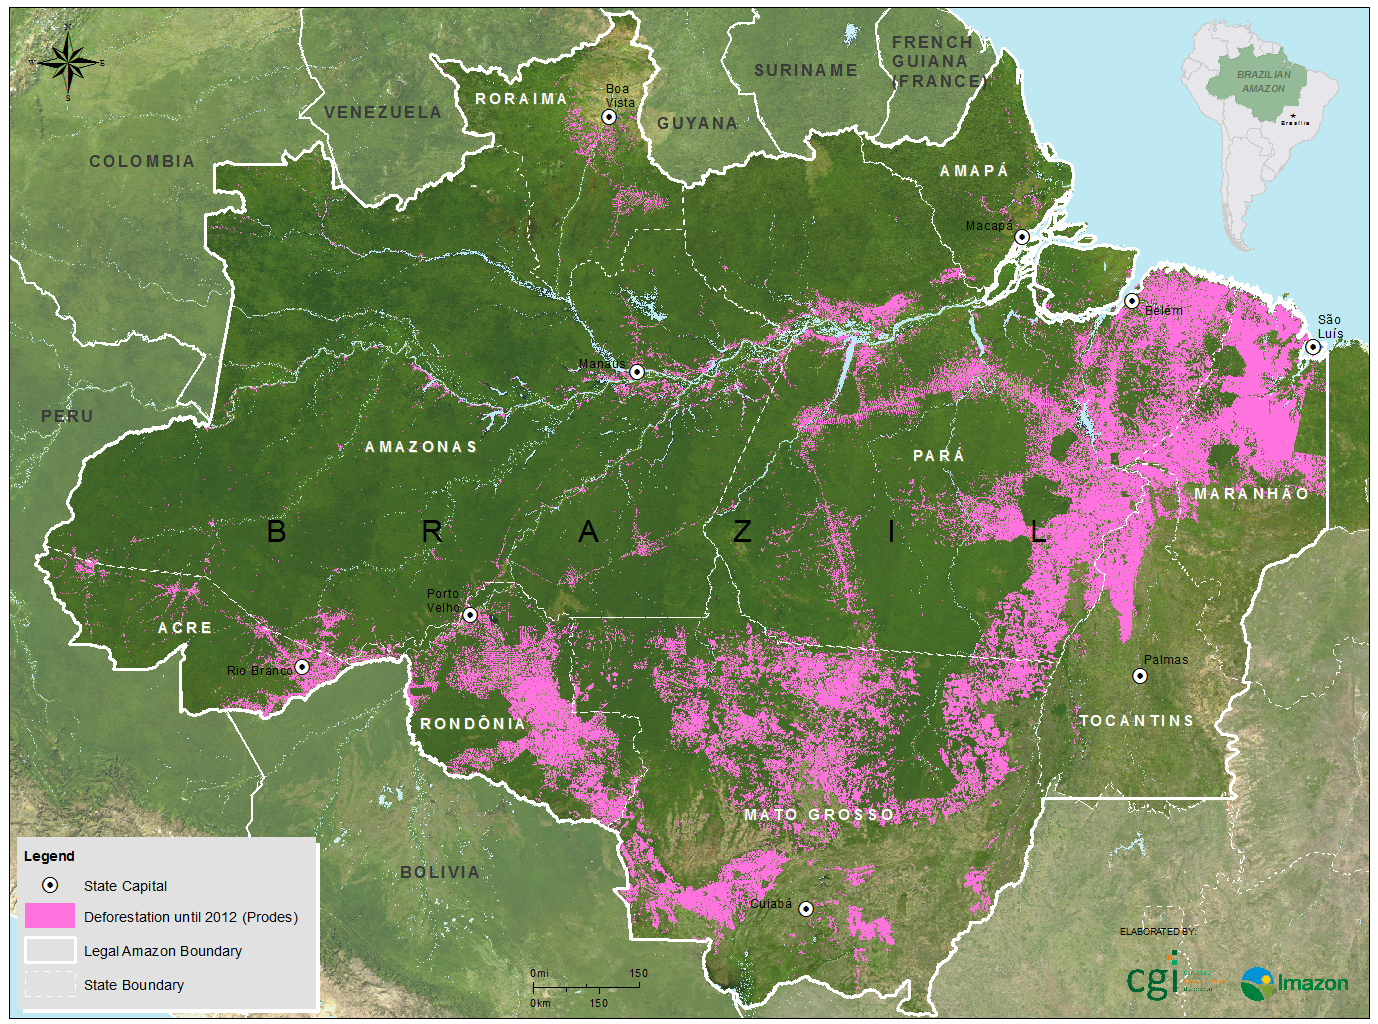 Proizvođači palmina ulja vode Orangutane u izumiranje Mapa_Bruno_Desmate_100dpi_ingles